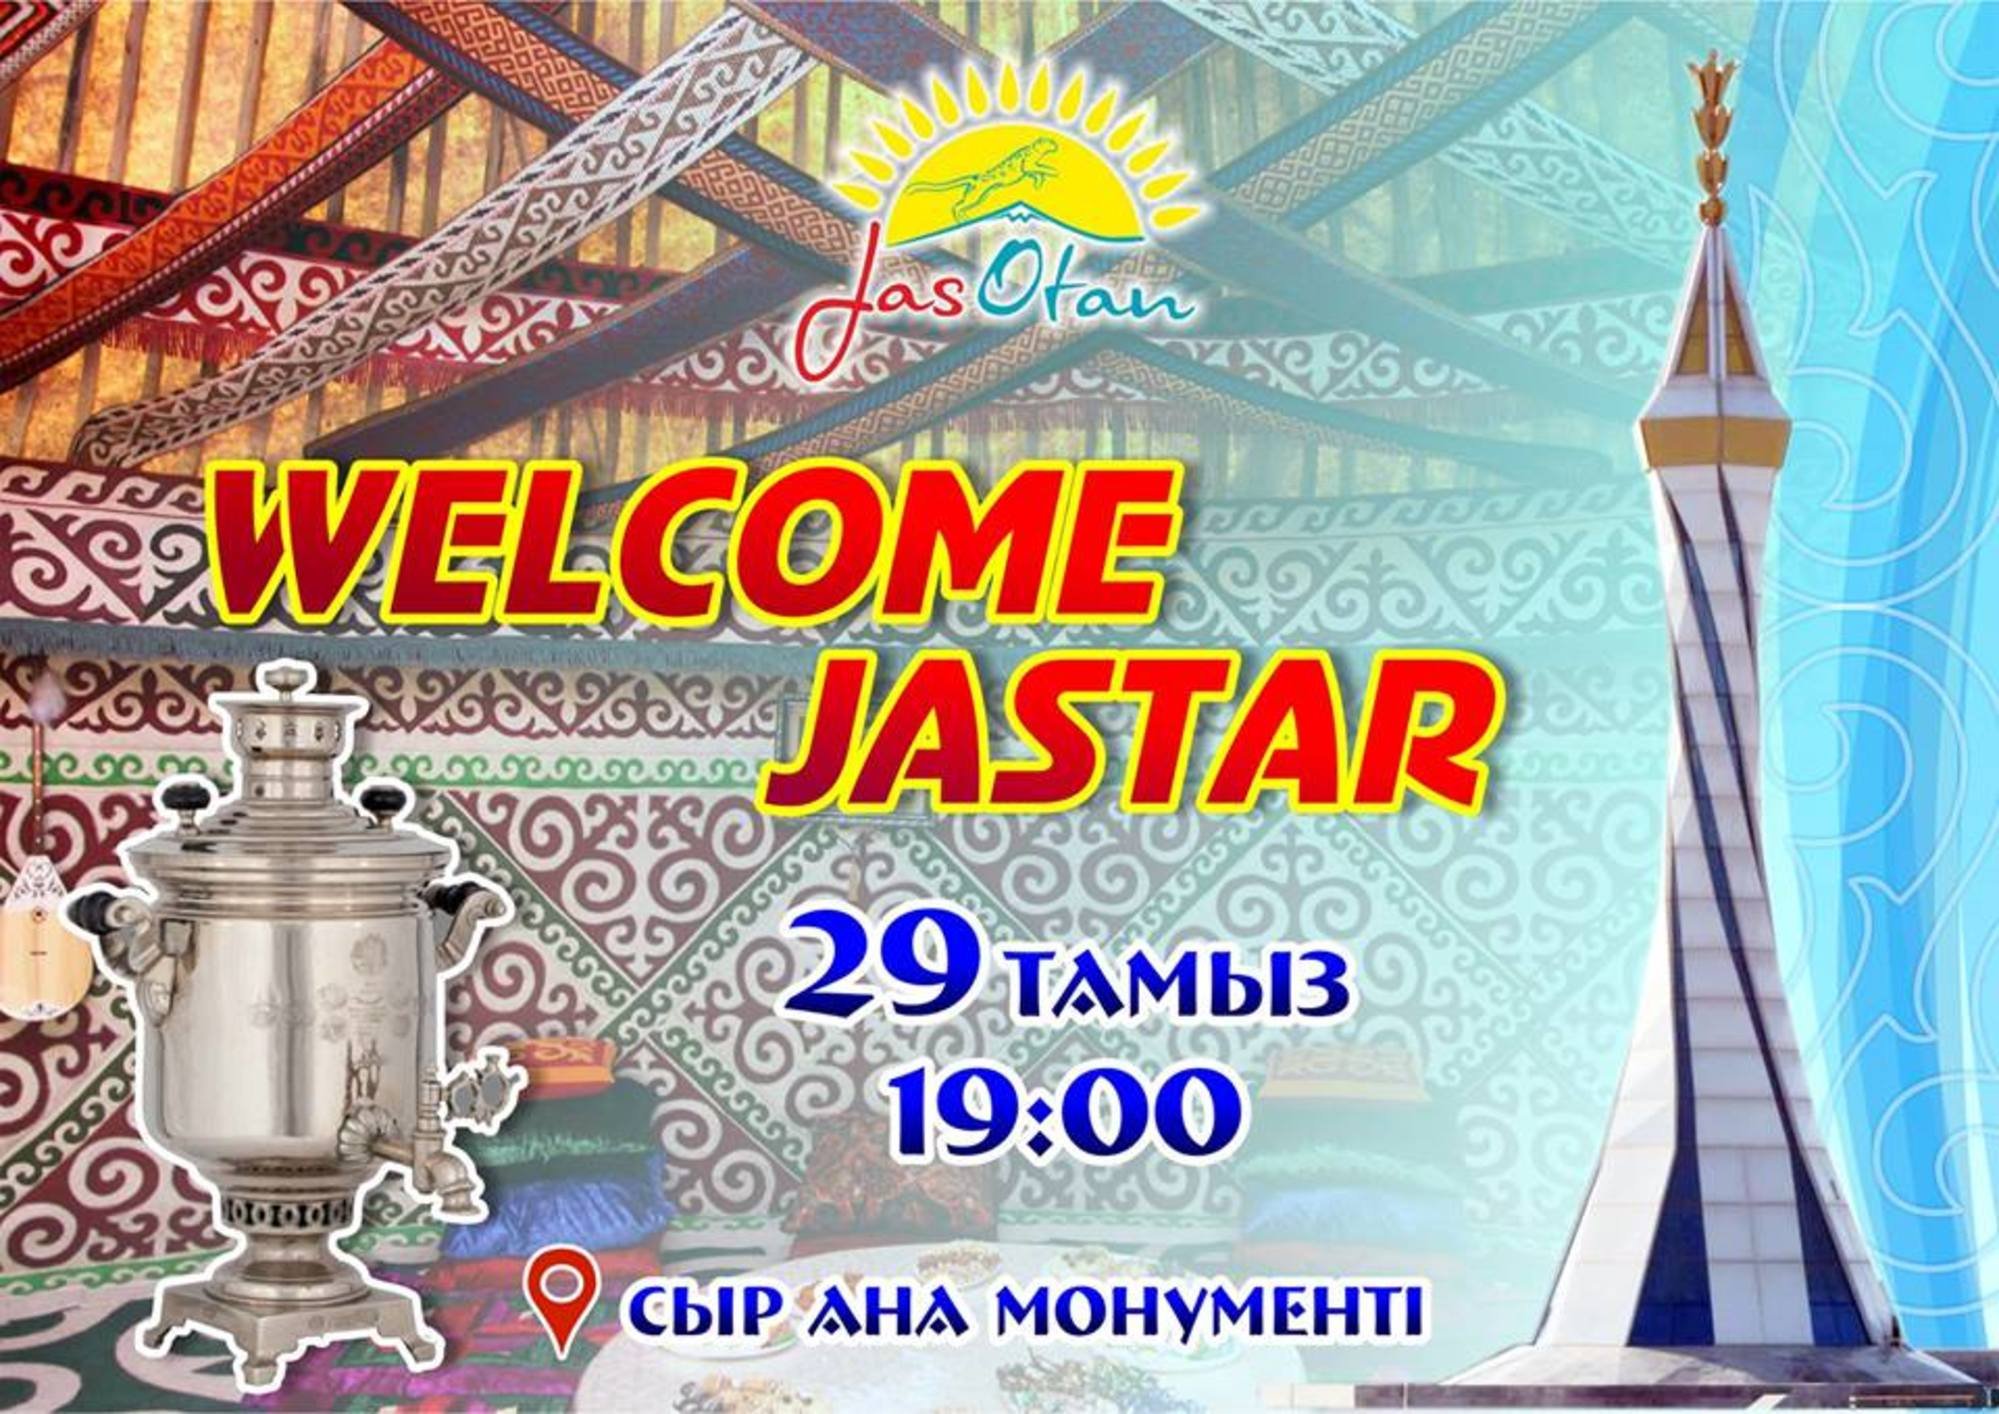 "Welcome Jastar"